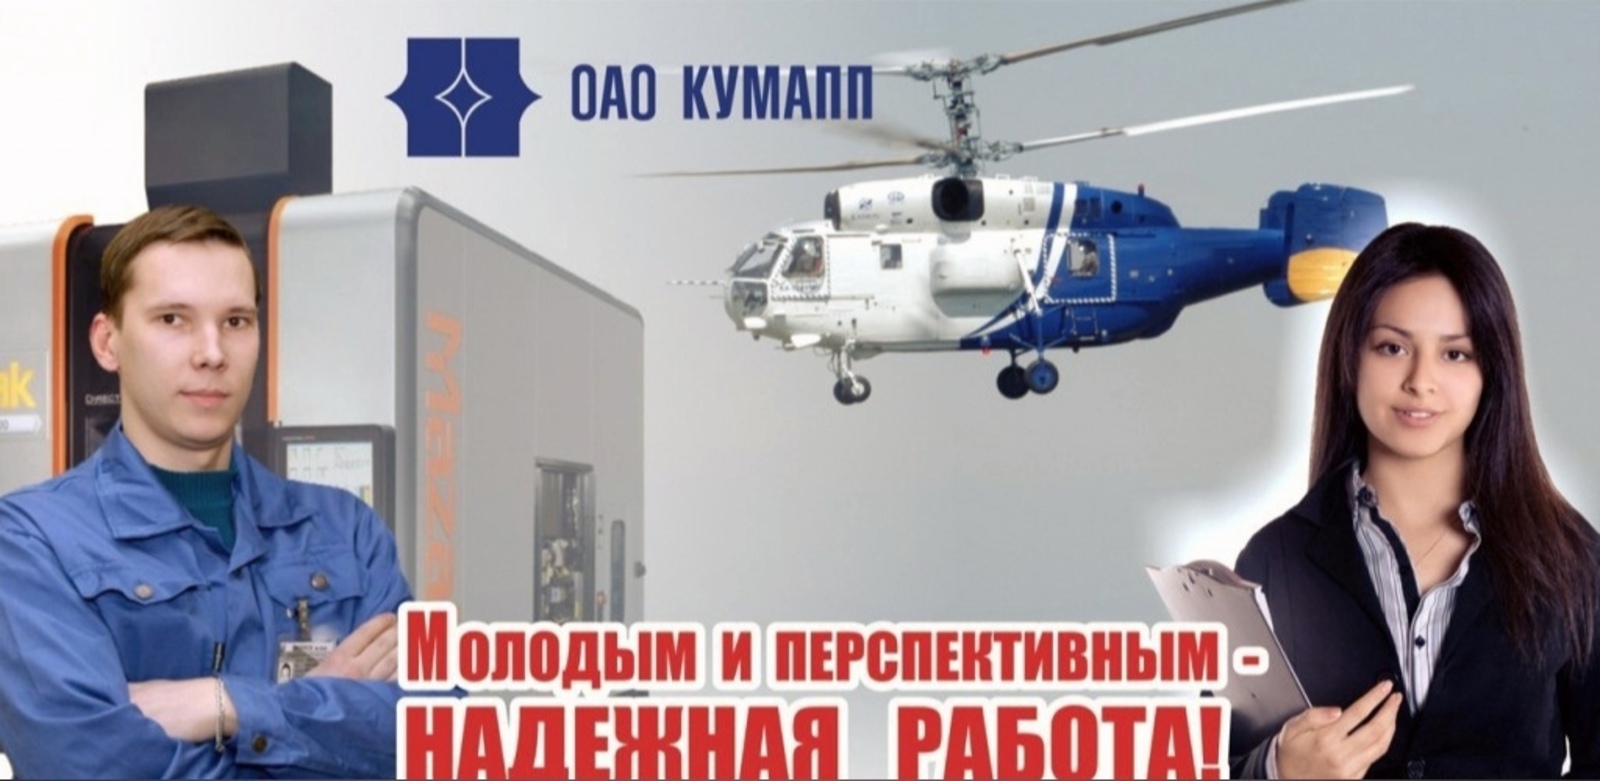 Путин считает, что холдинг "Вертолеты России" показал свою дееспособность